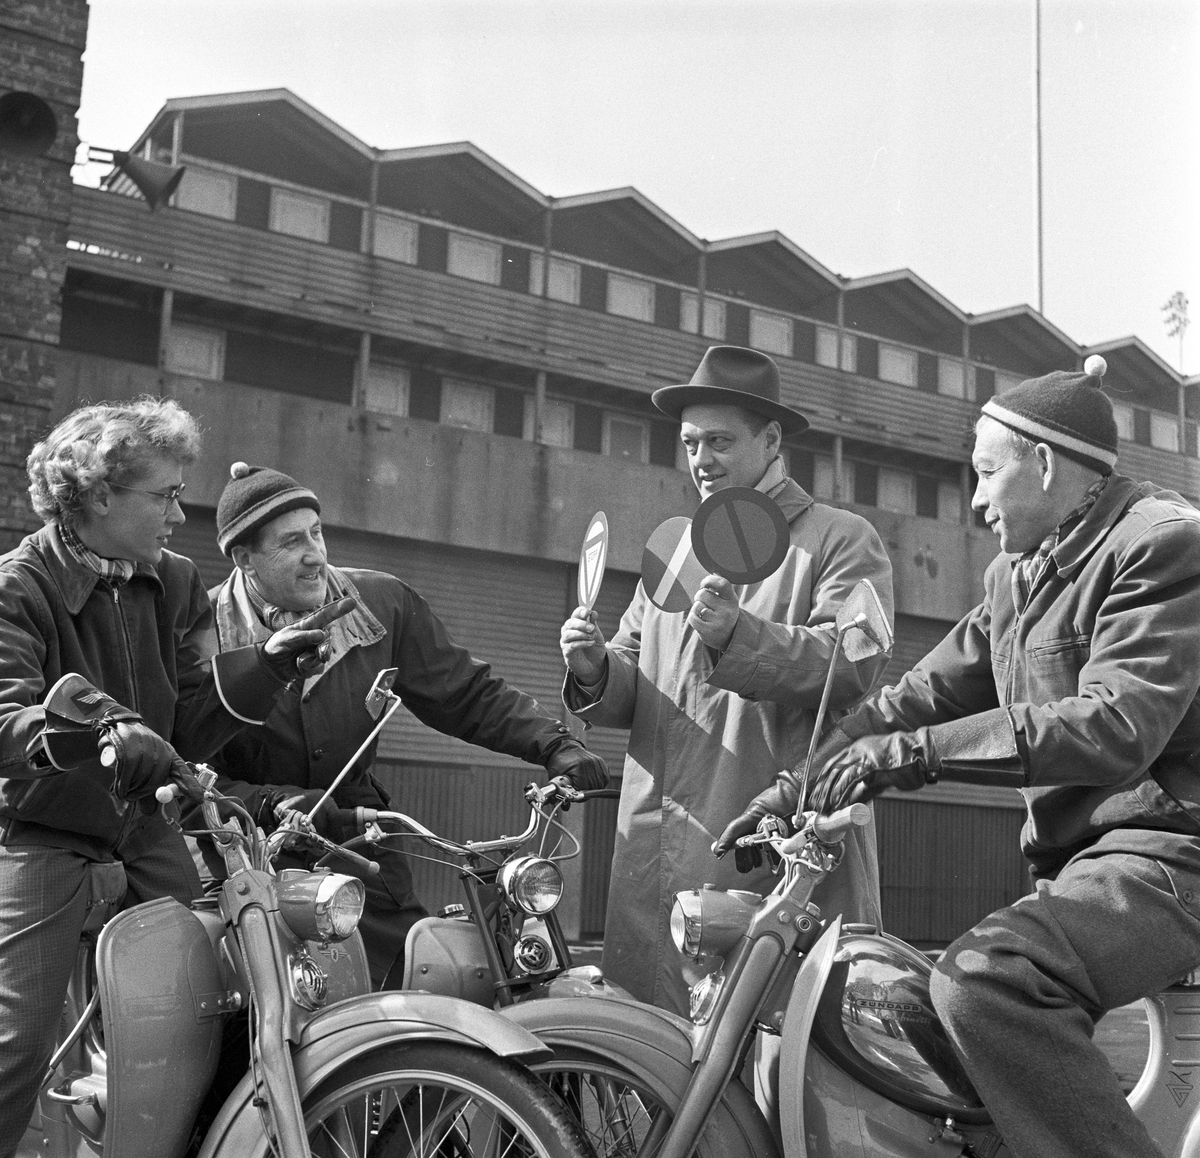 Serie. Moped-kurs. Fotografert 1959.

